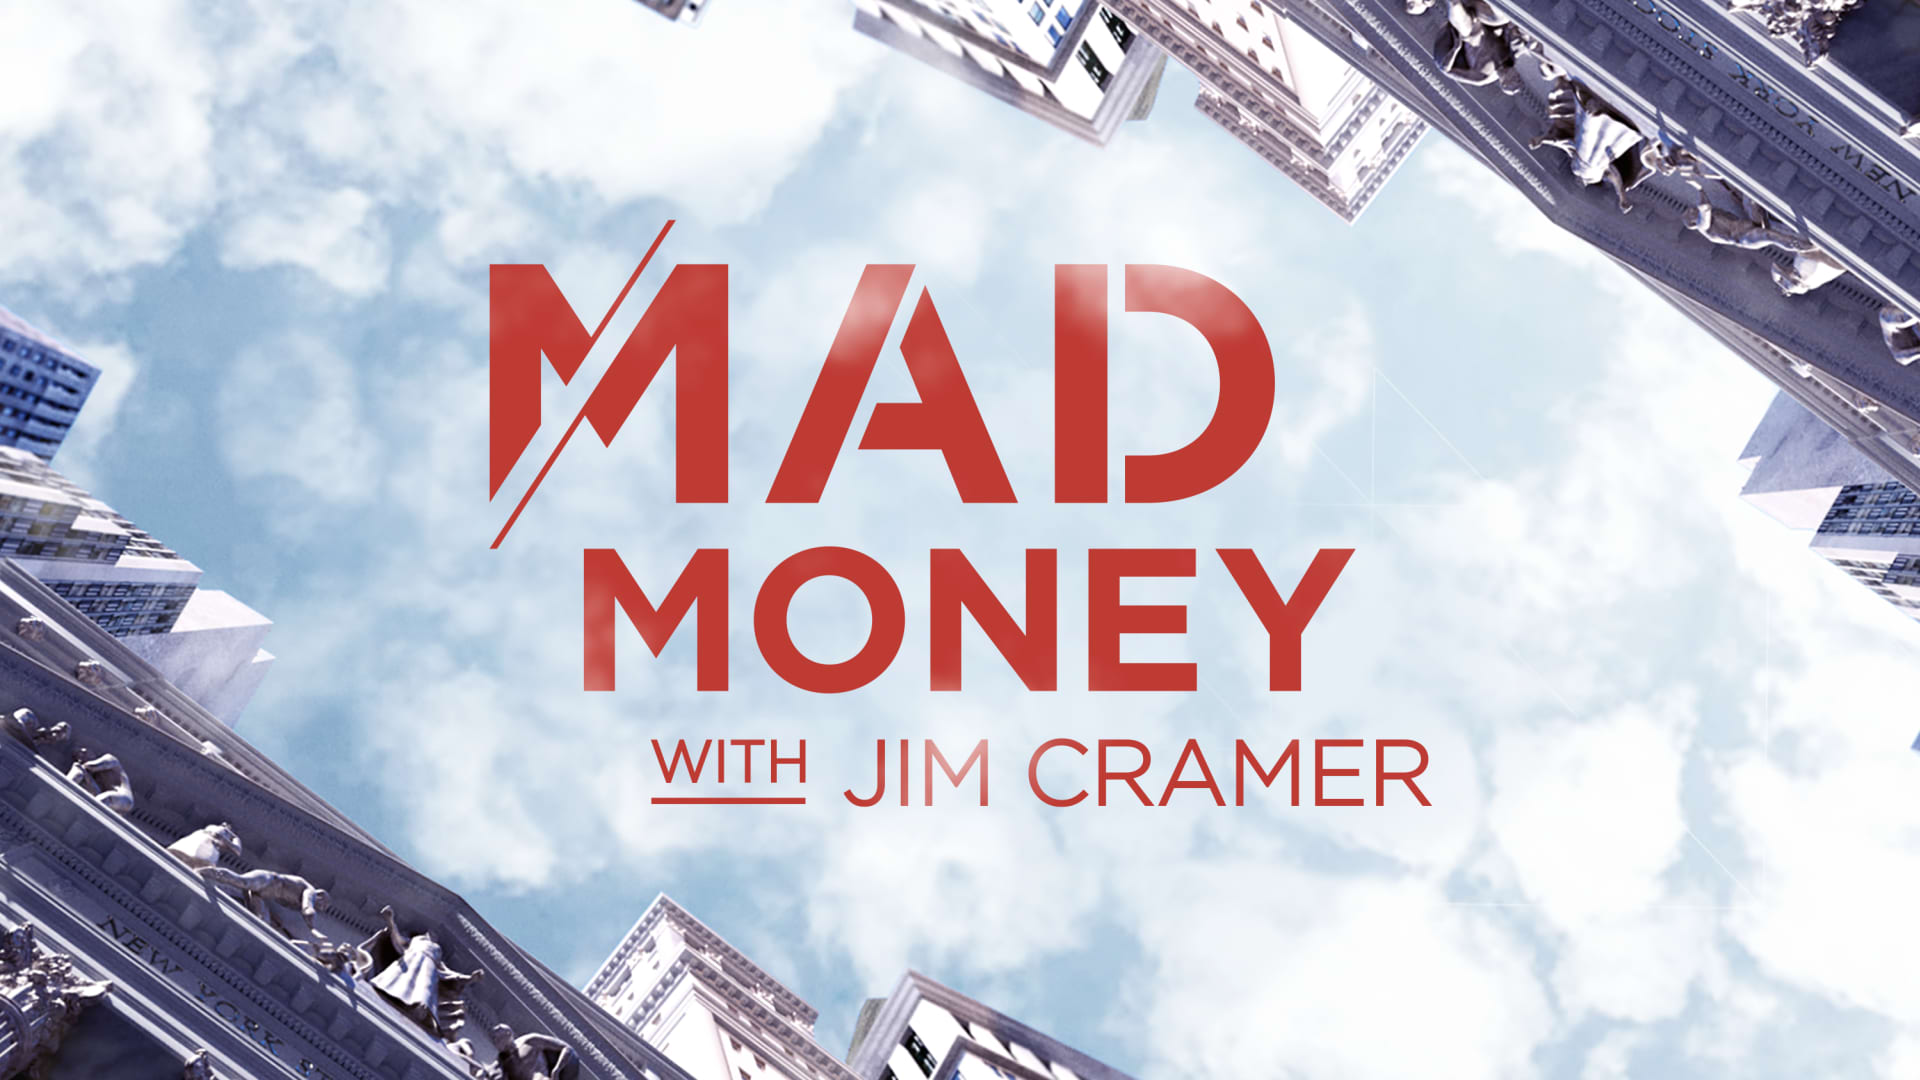 Mad Money con Jim Cramer: resúmenes de episodios, selecciones de acciones, éxitos relámpagos